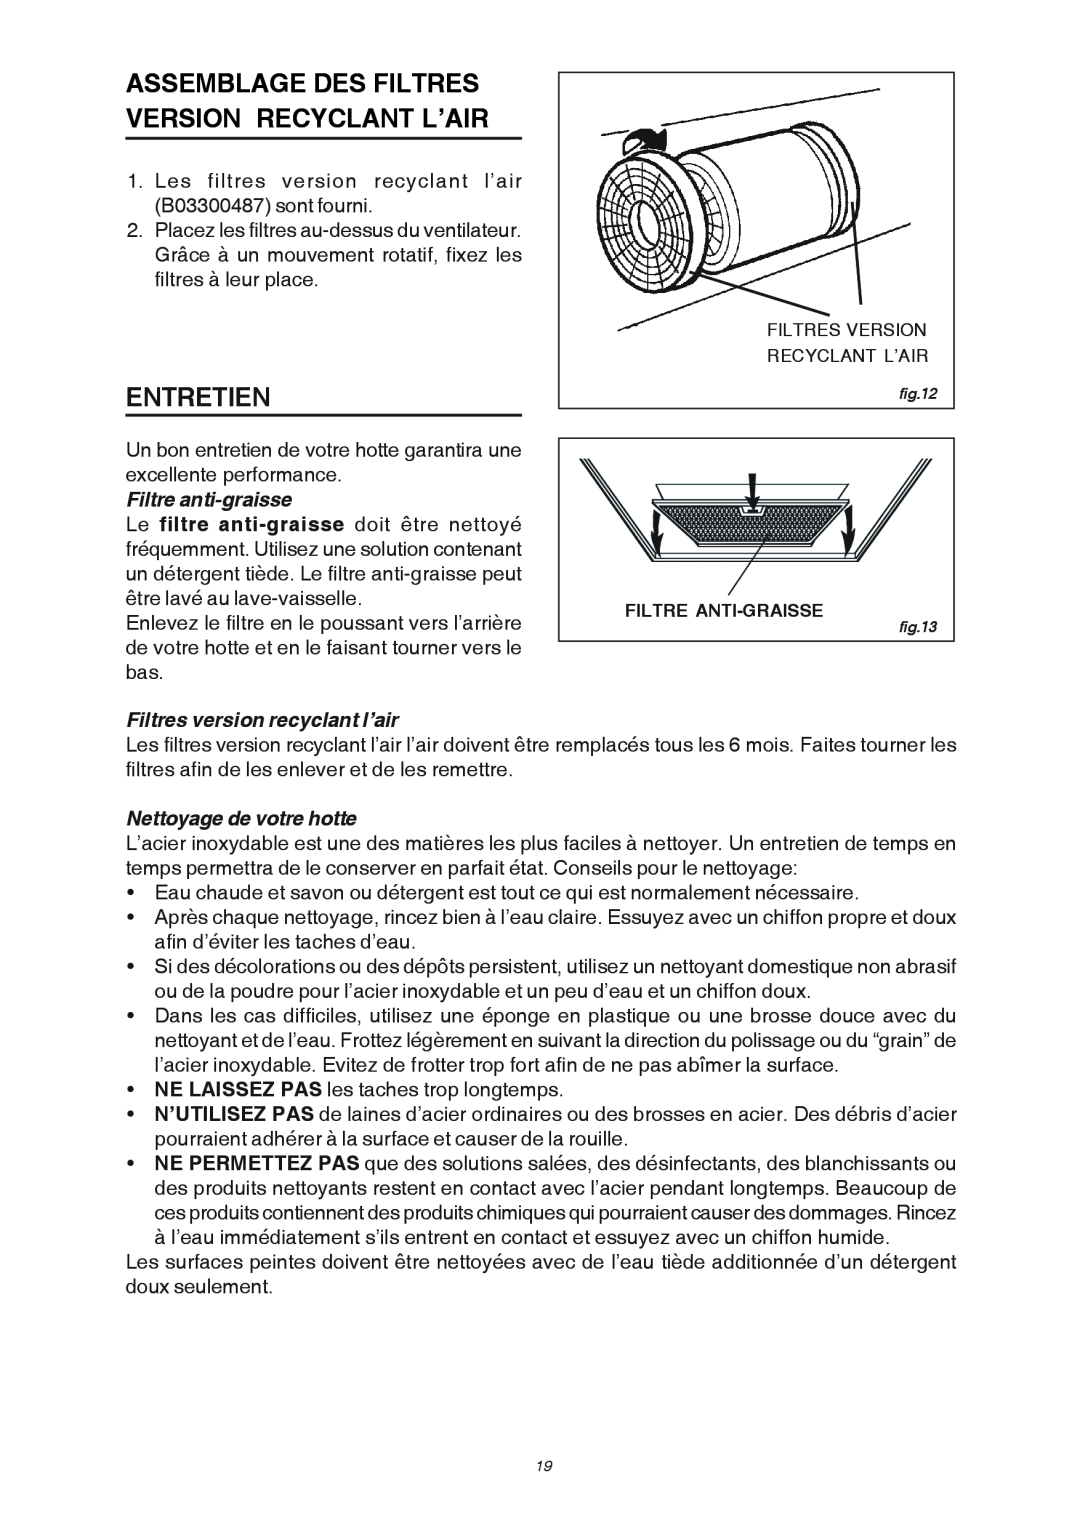 Broan RM503604 Assemblage Des Filtres Version Recyclant L’Air, Entretien, Filtre anti-graisse, Nettoyage de votre hotte 